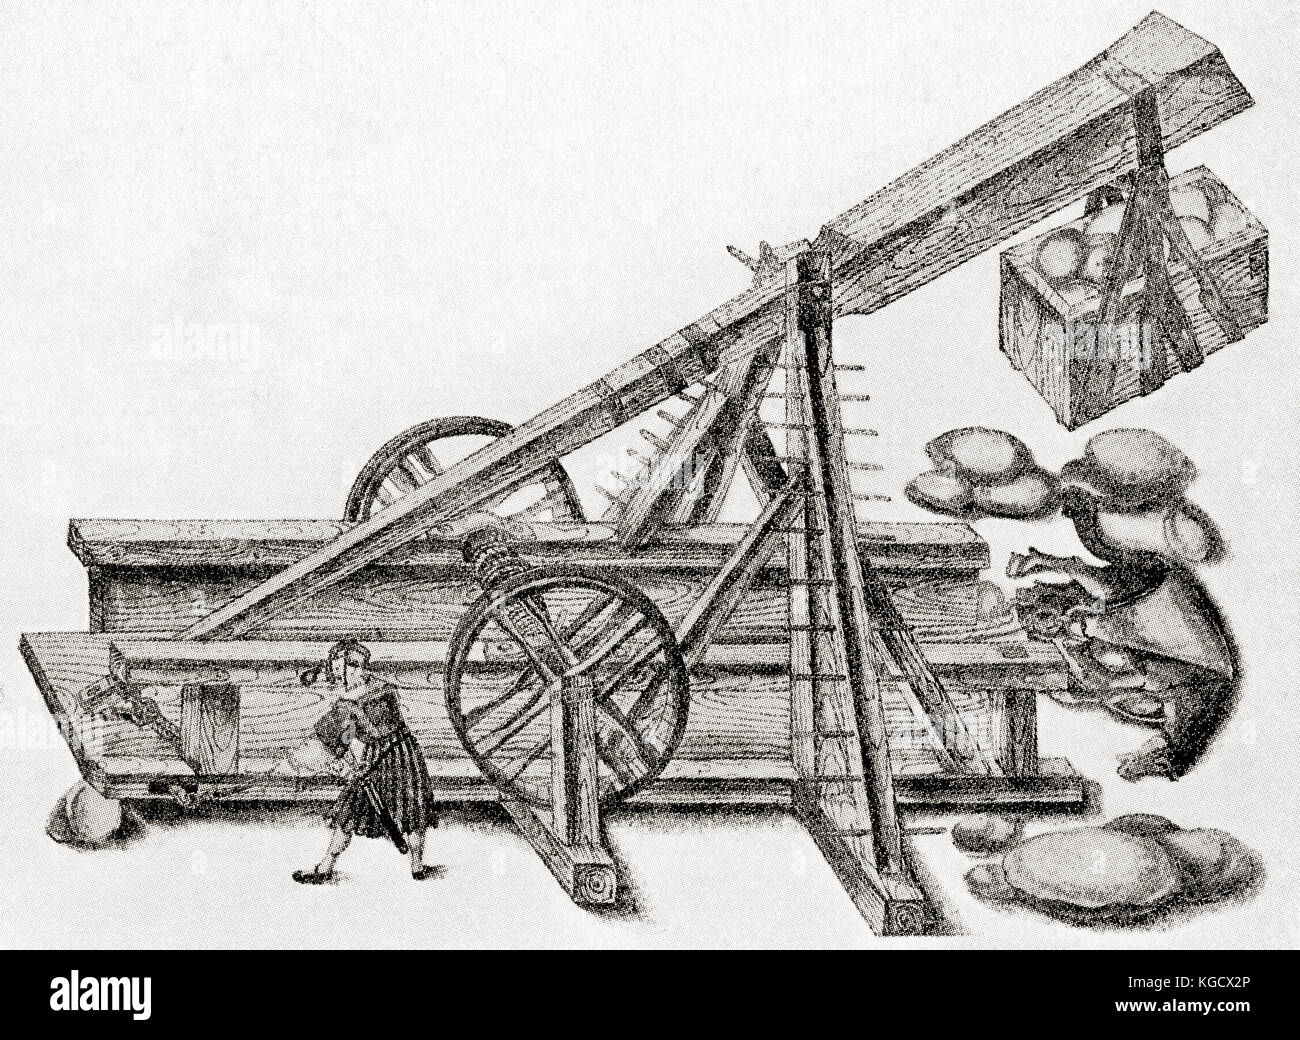 Ein Katapult, das von der Armee Maximilans I. benutzt wurde Diese Holzmaschine wurde verwendet, um Steine, Felsen oder sogar Müll in eine Festung oder Burg zu werfen. Aus Hutchinsons Geschichte der Nationen, veröffentlicht 1915. Stockfoto